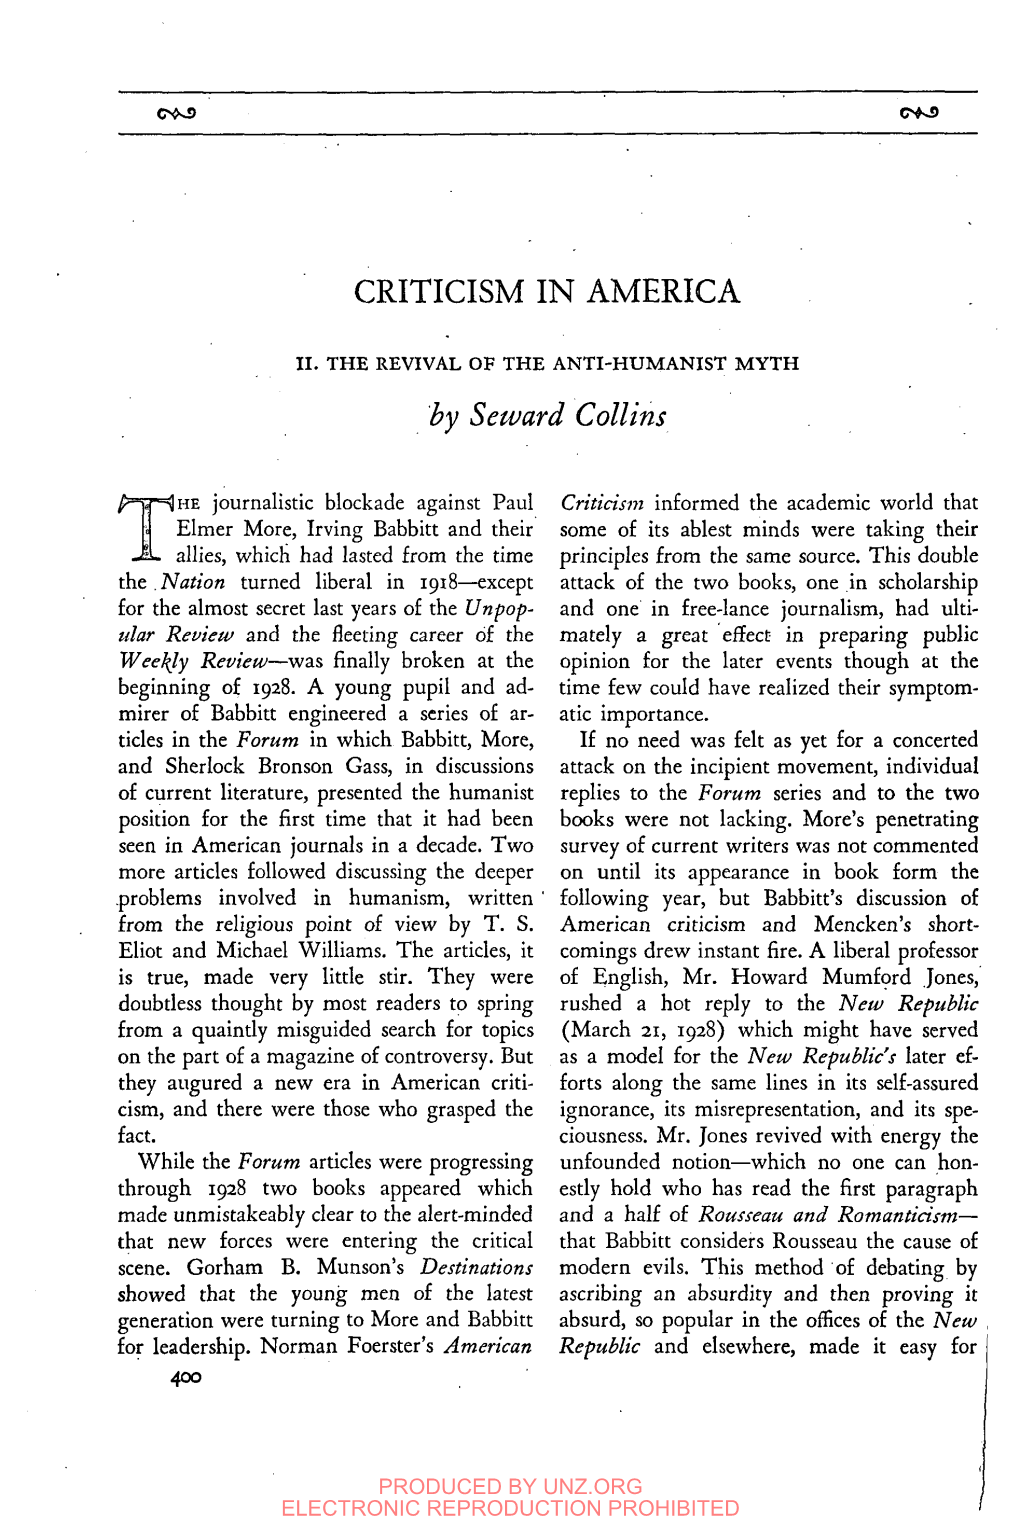 Criticism in America